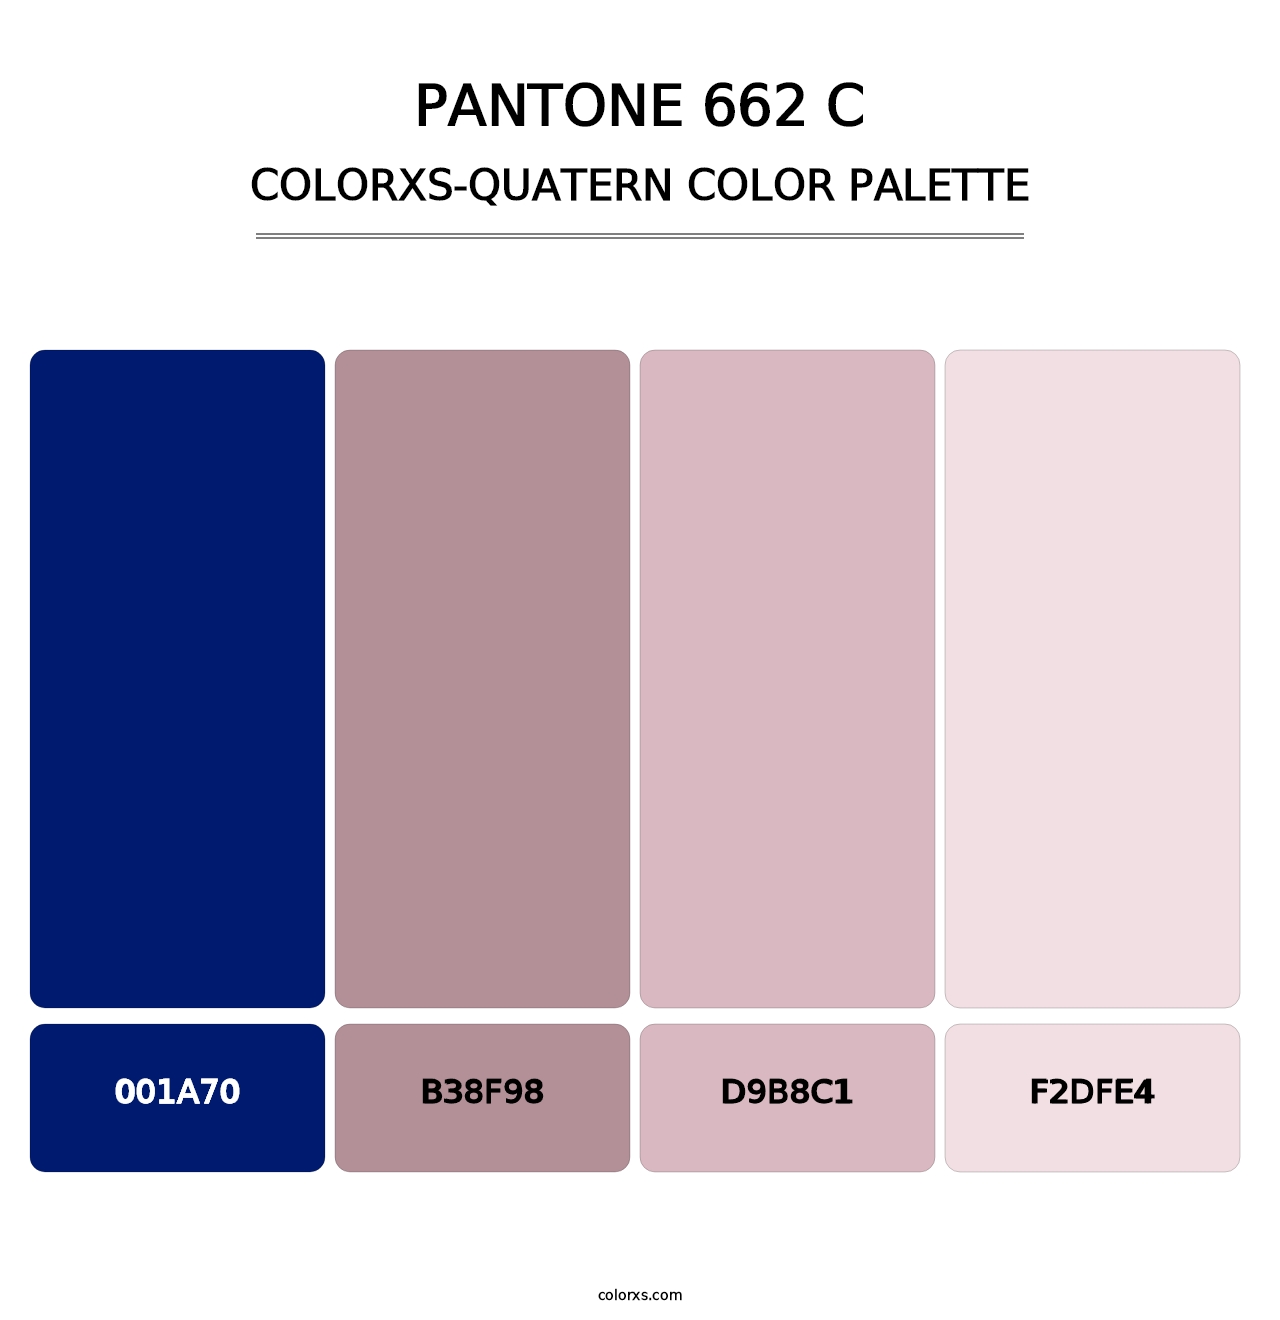 PANTONE 662 C - Colorxs Quatern Palette